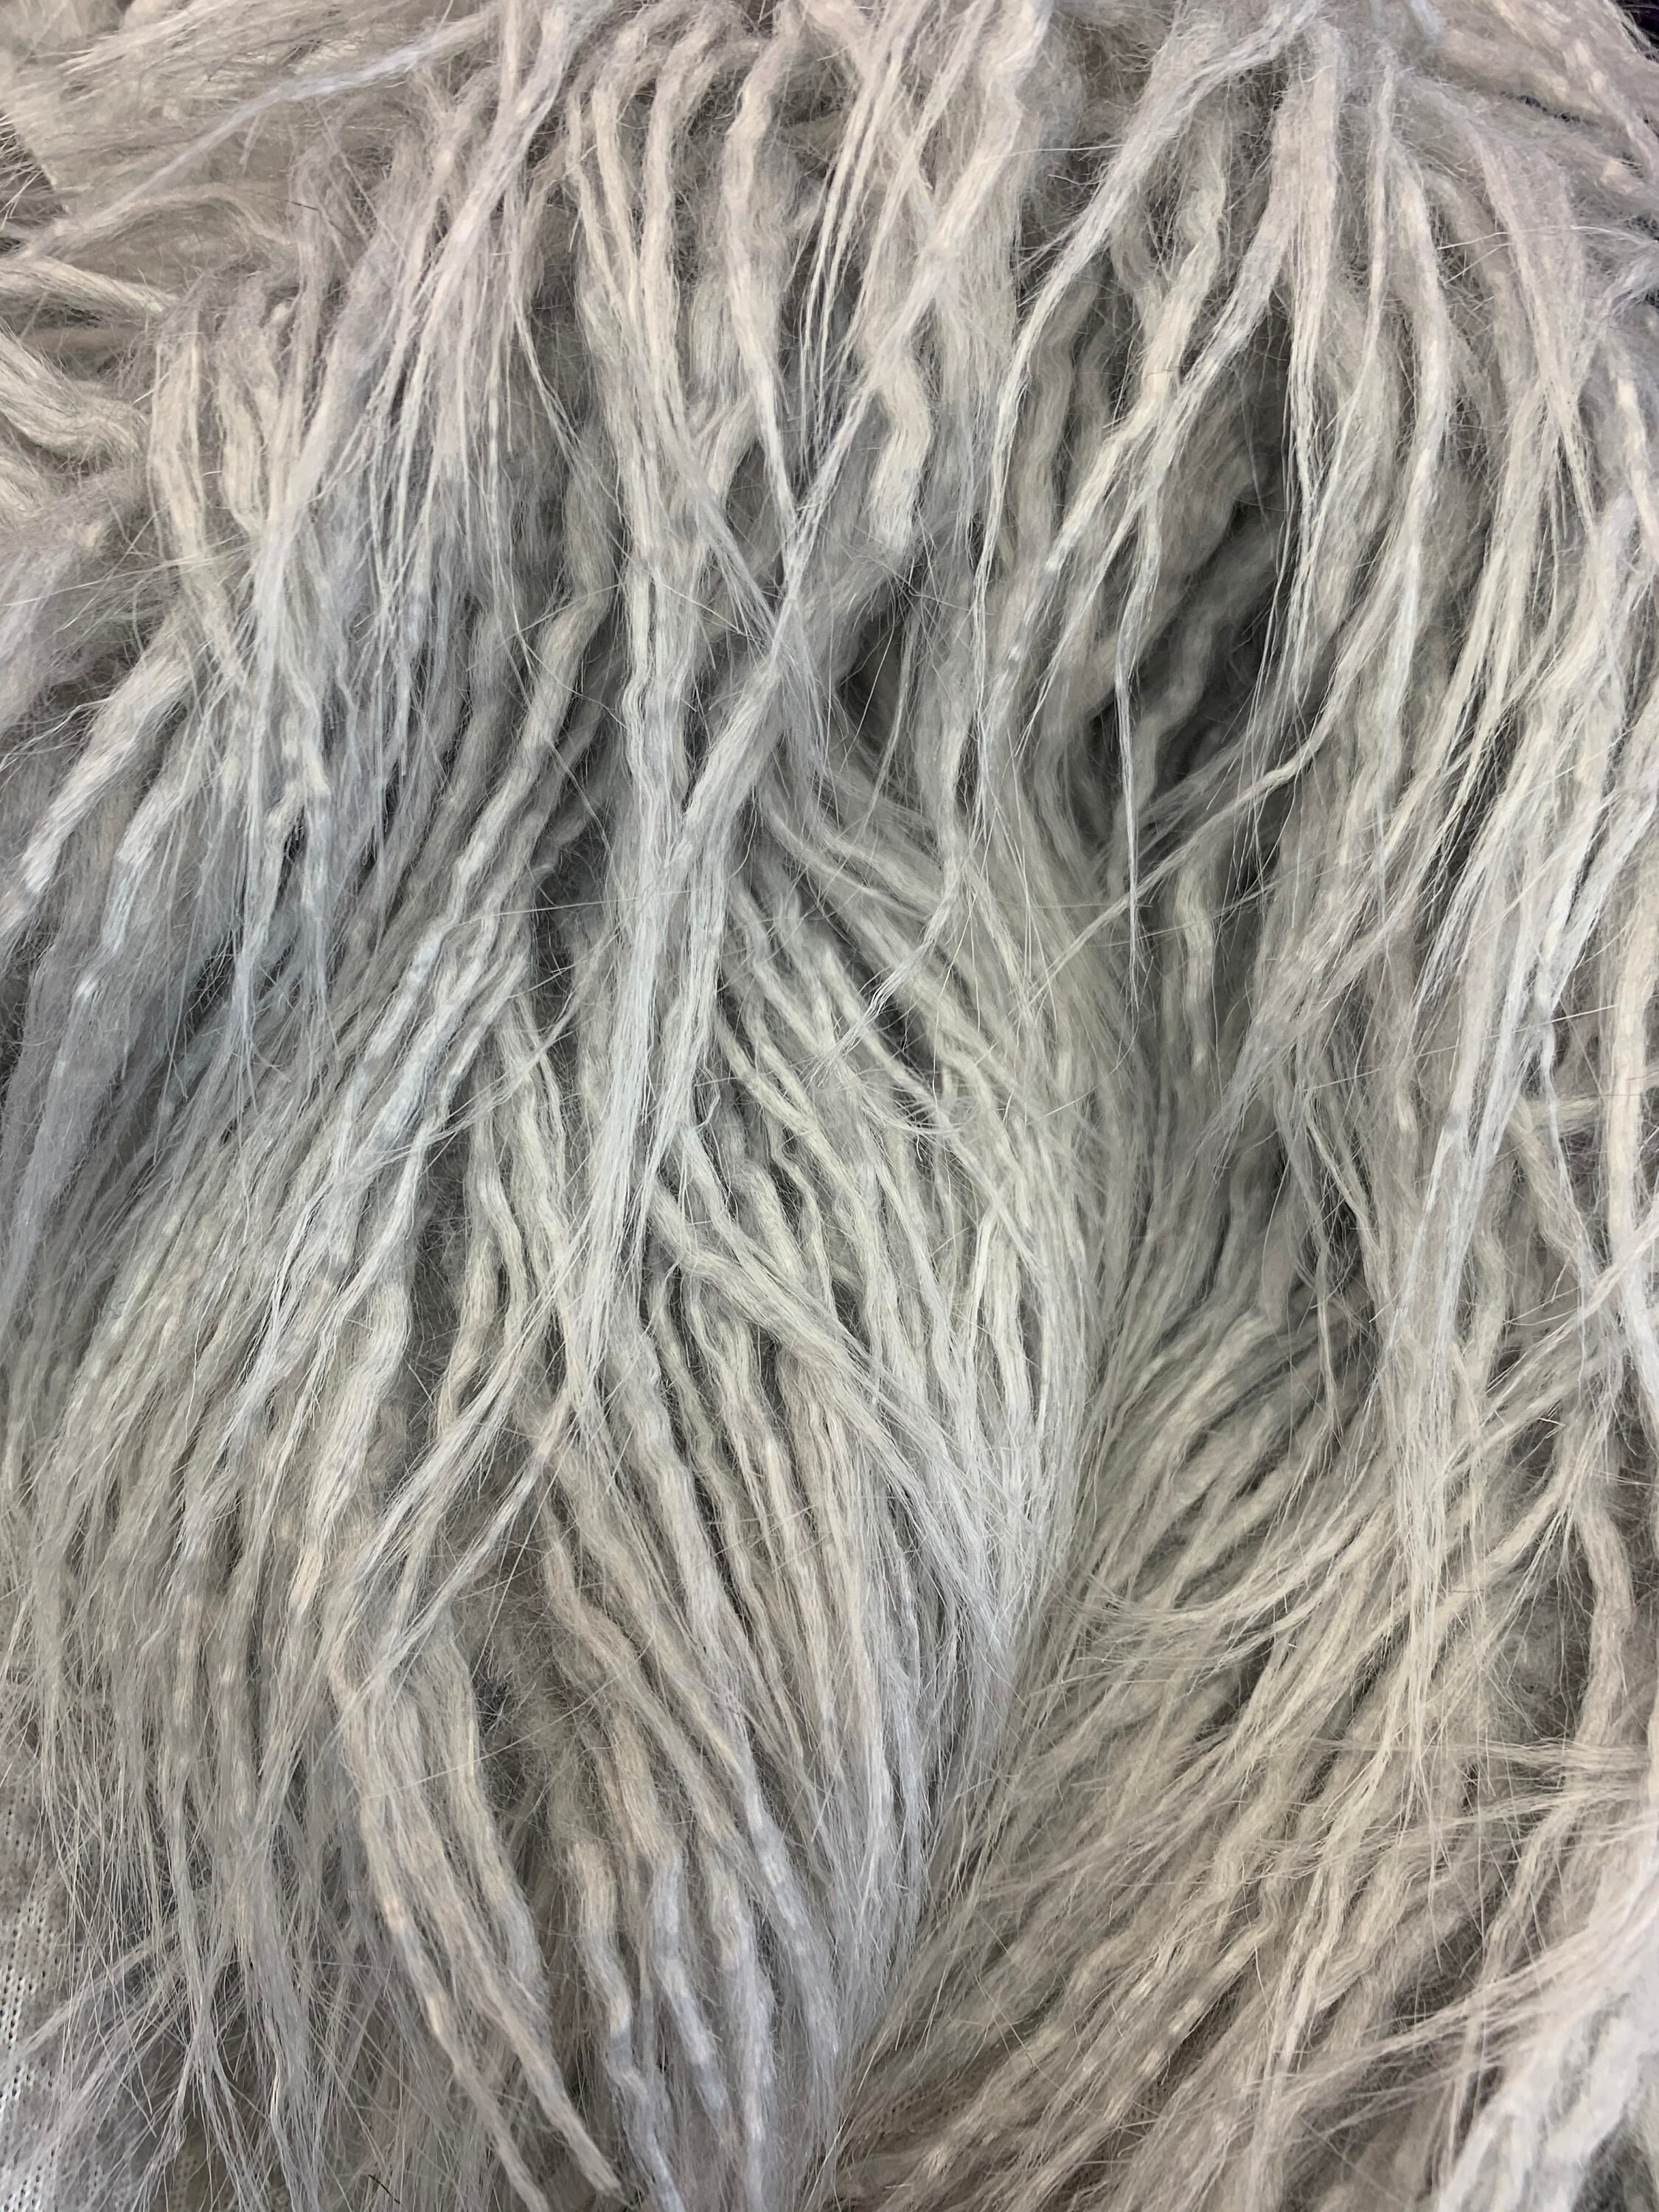 Yeti Mongolian Long Pile Animal Fur Material Gray Fake FAUX | Etsy